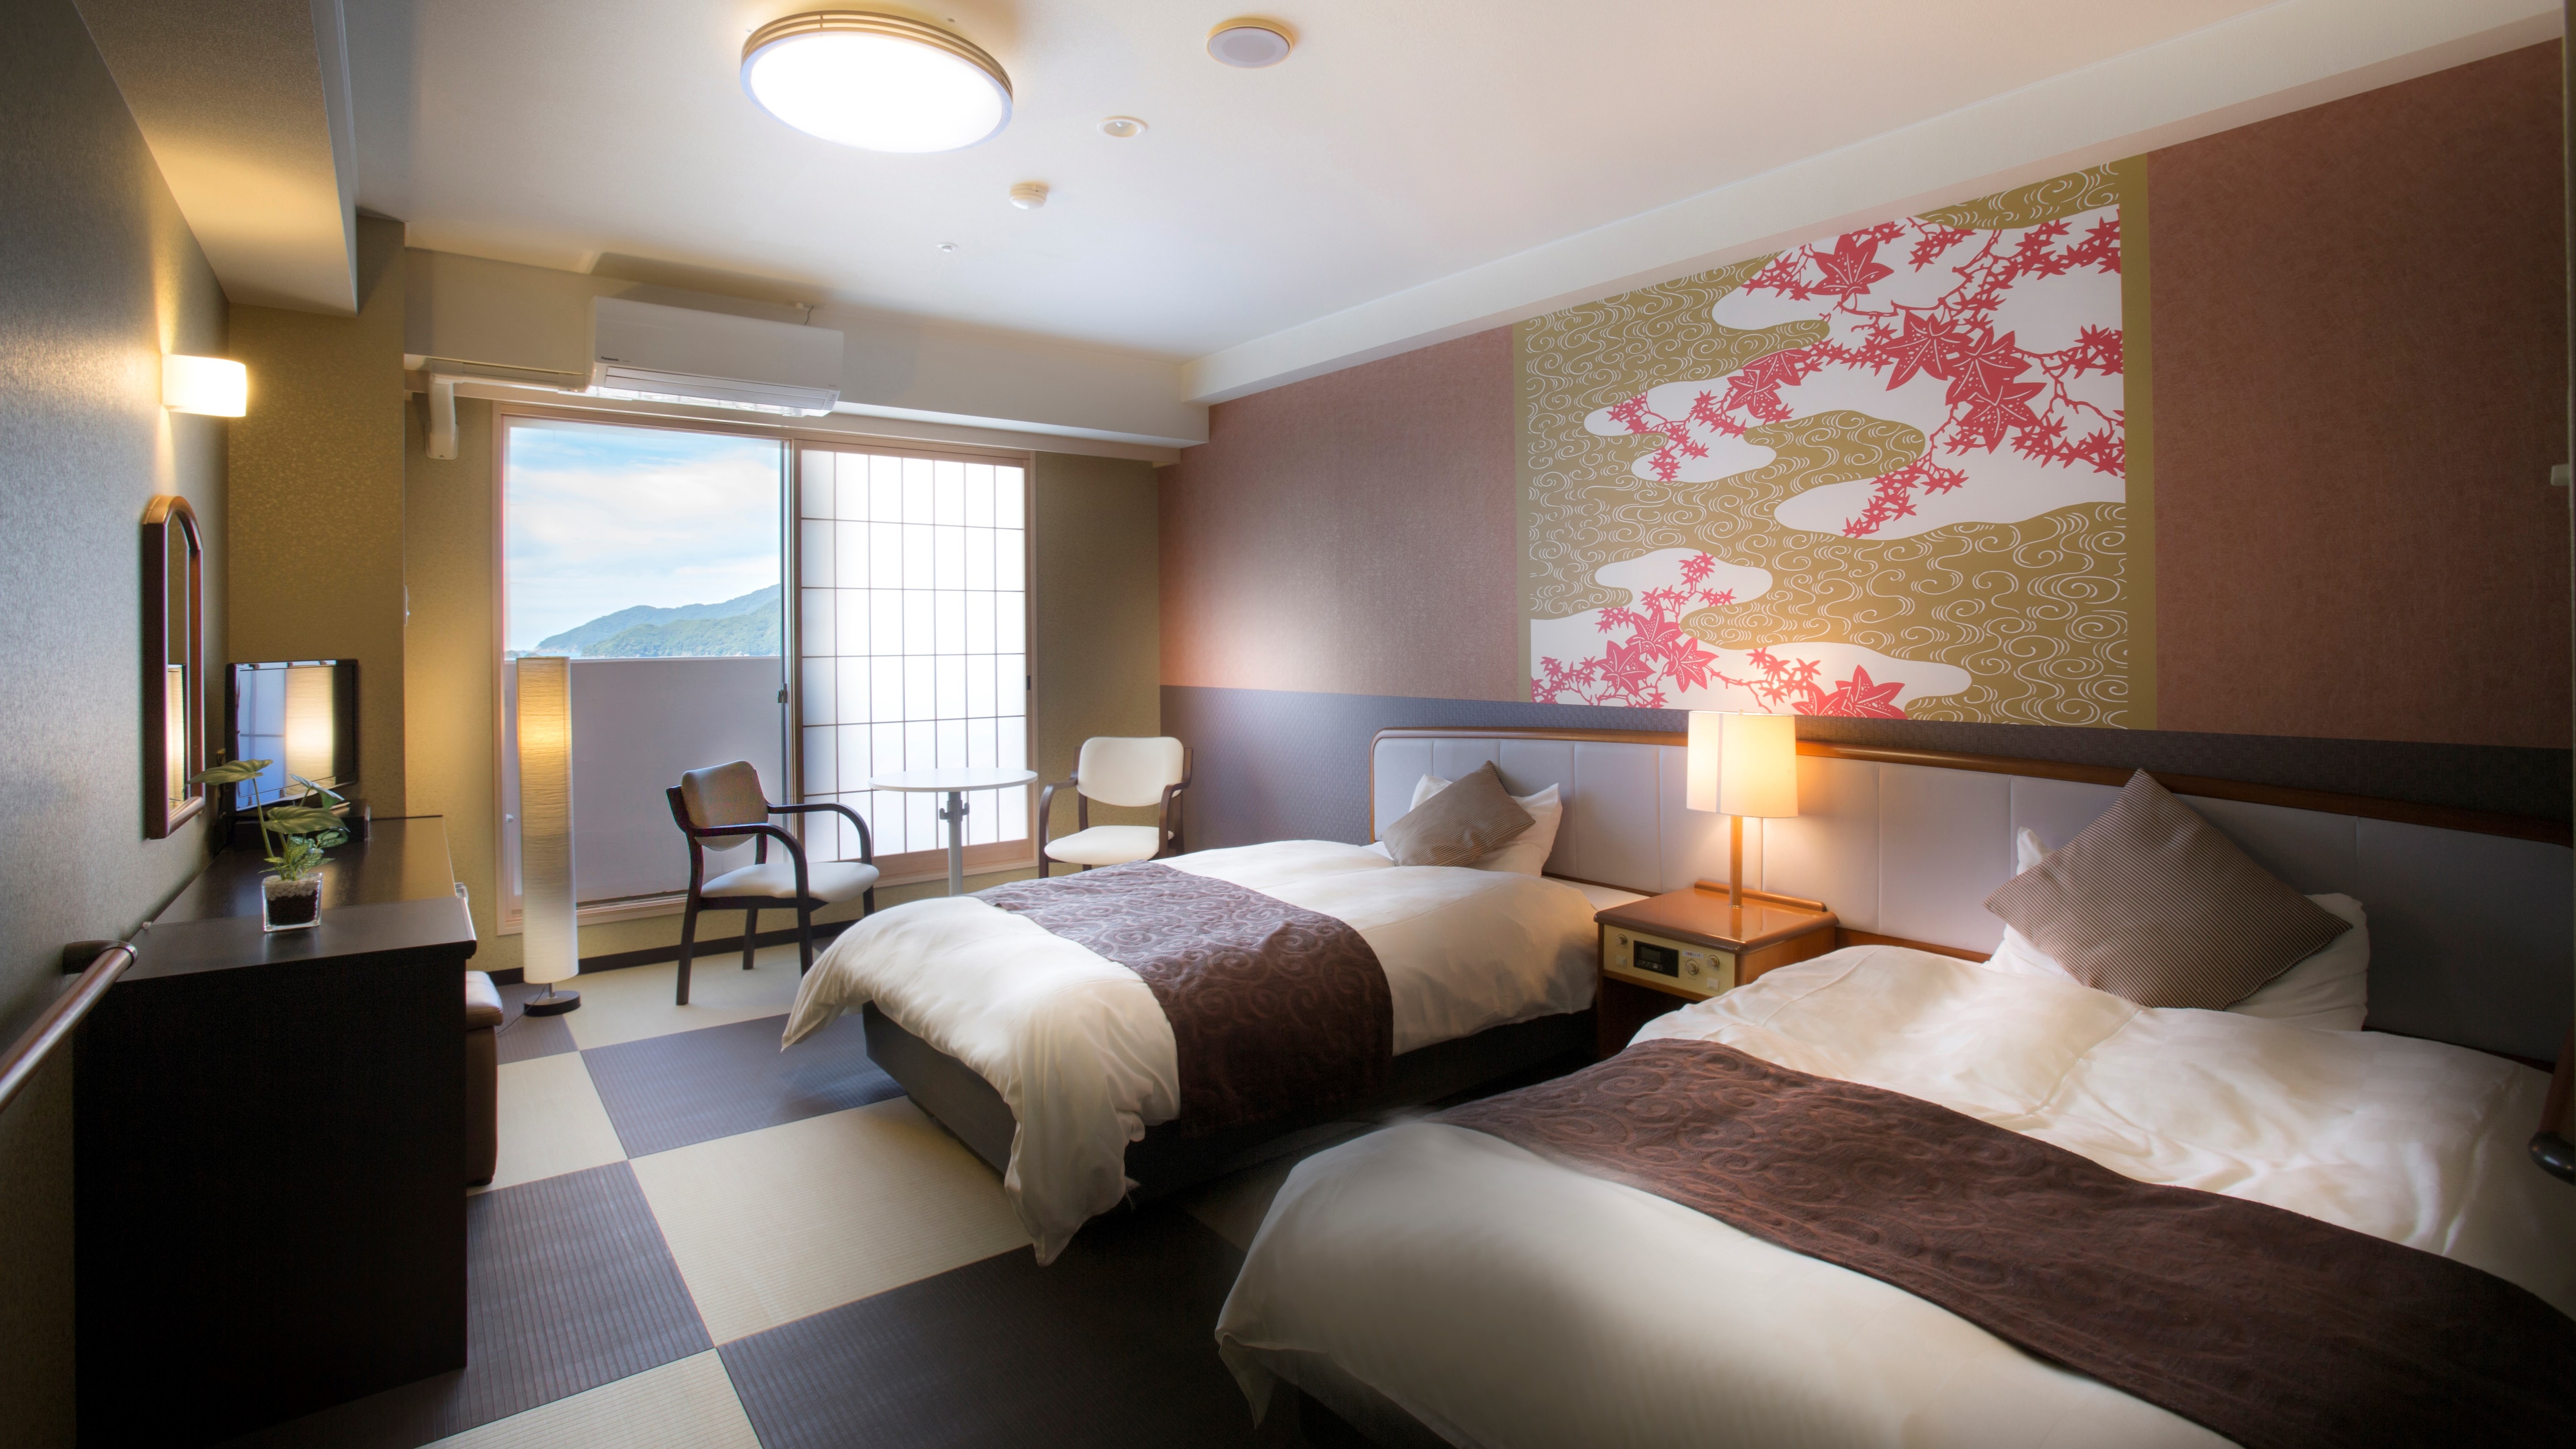 Contoh pembaruan kamar twin modern Jepang (daun musim gugur)